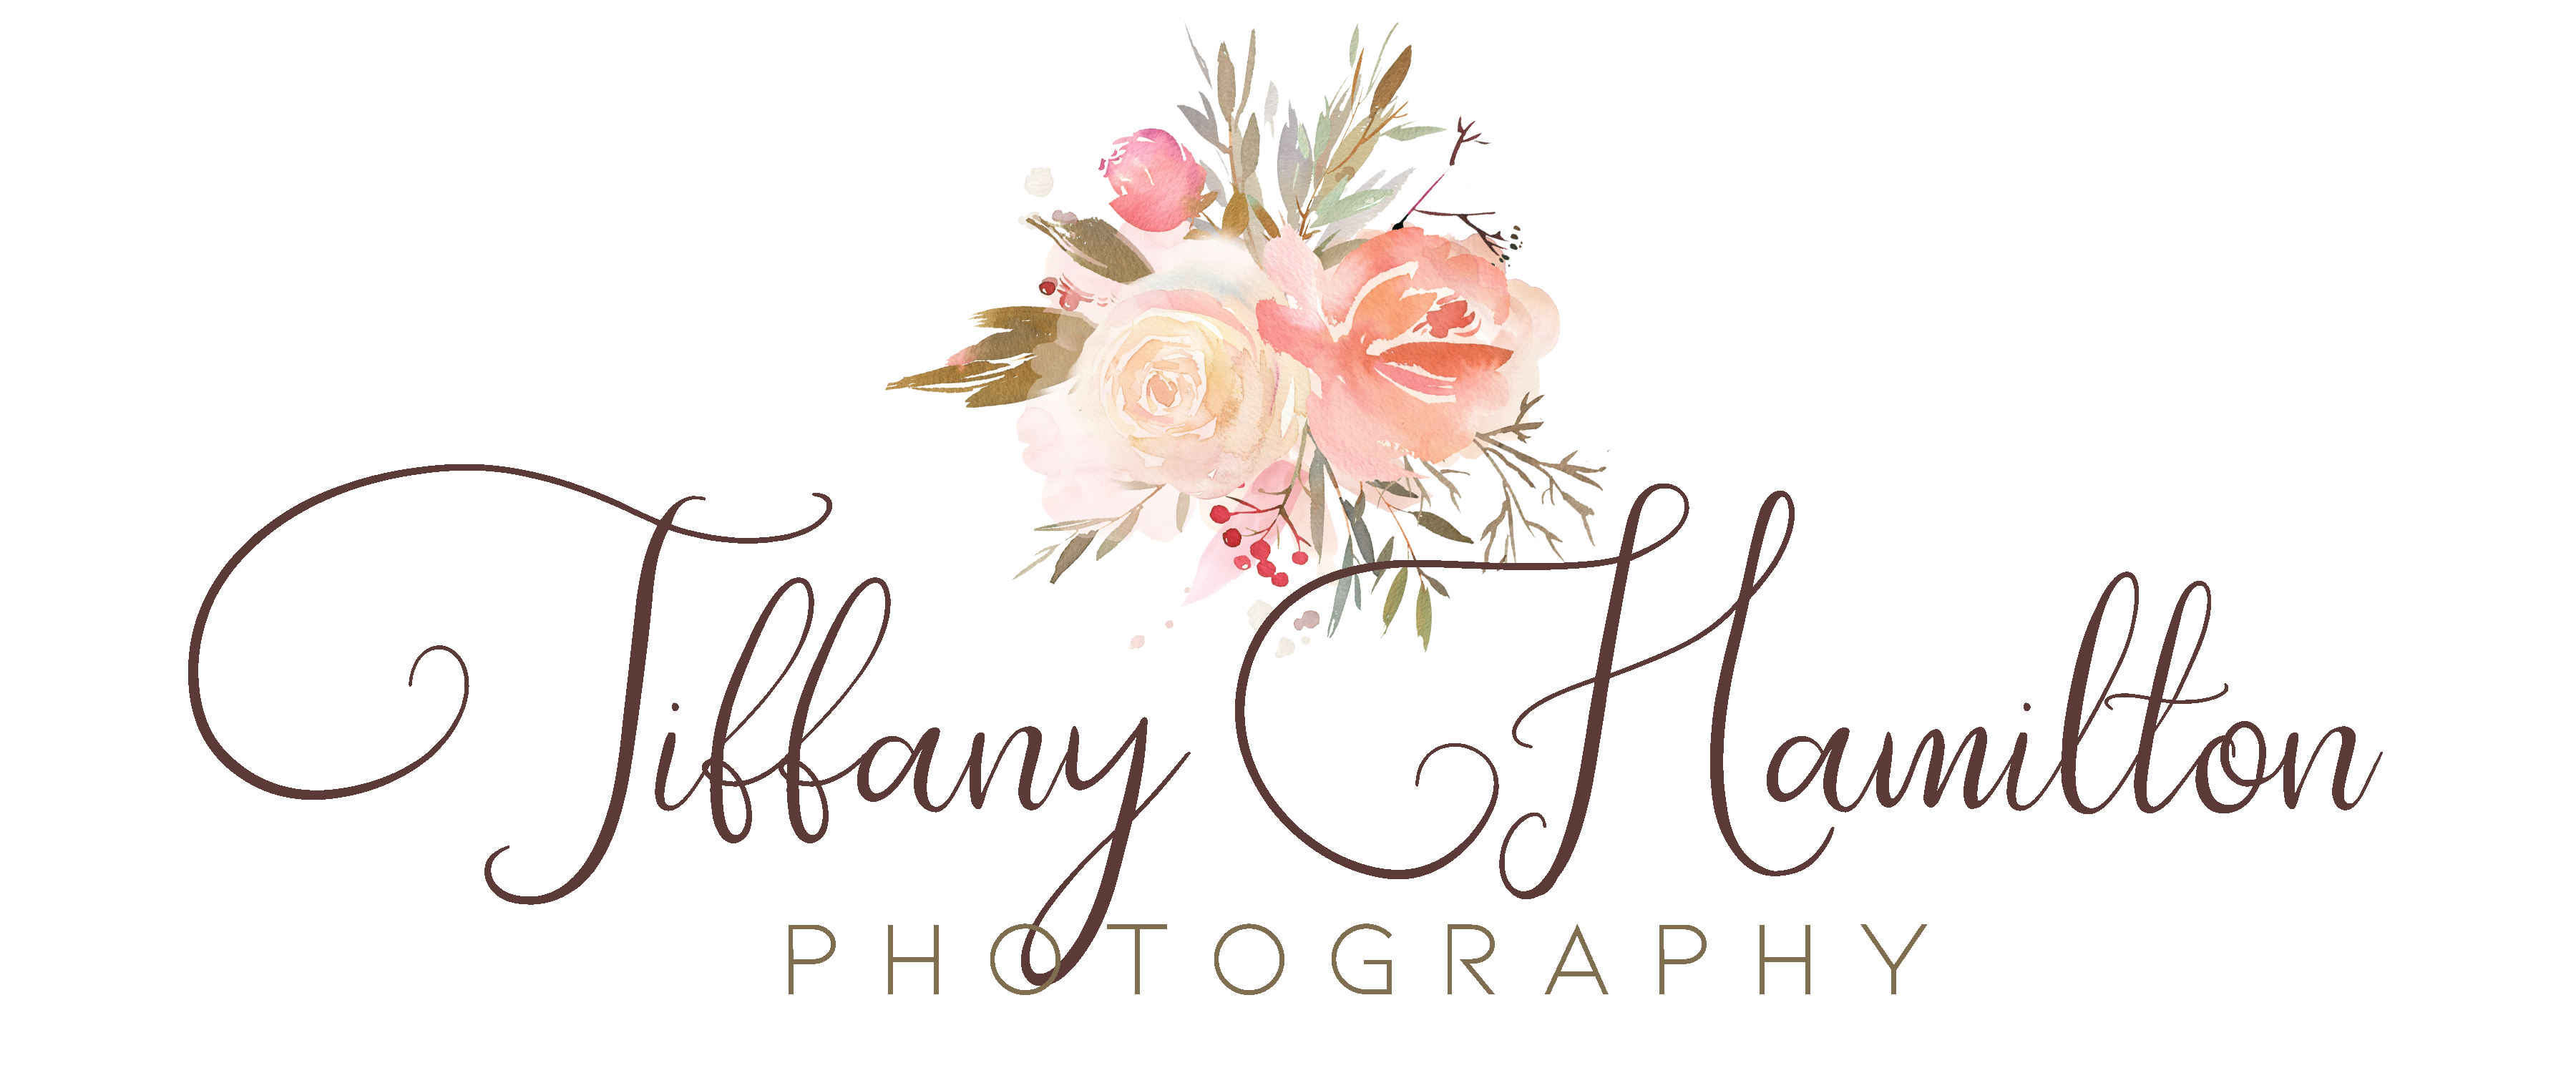 Tiffany Hamilton Photography